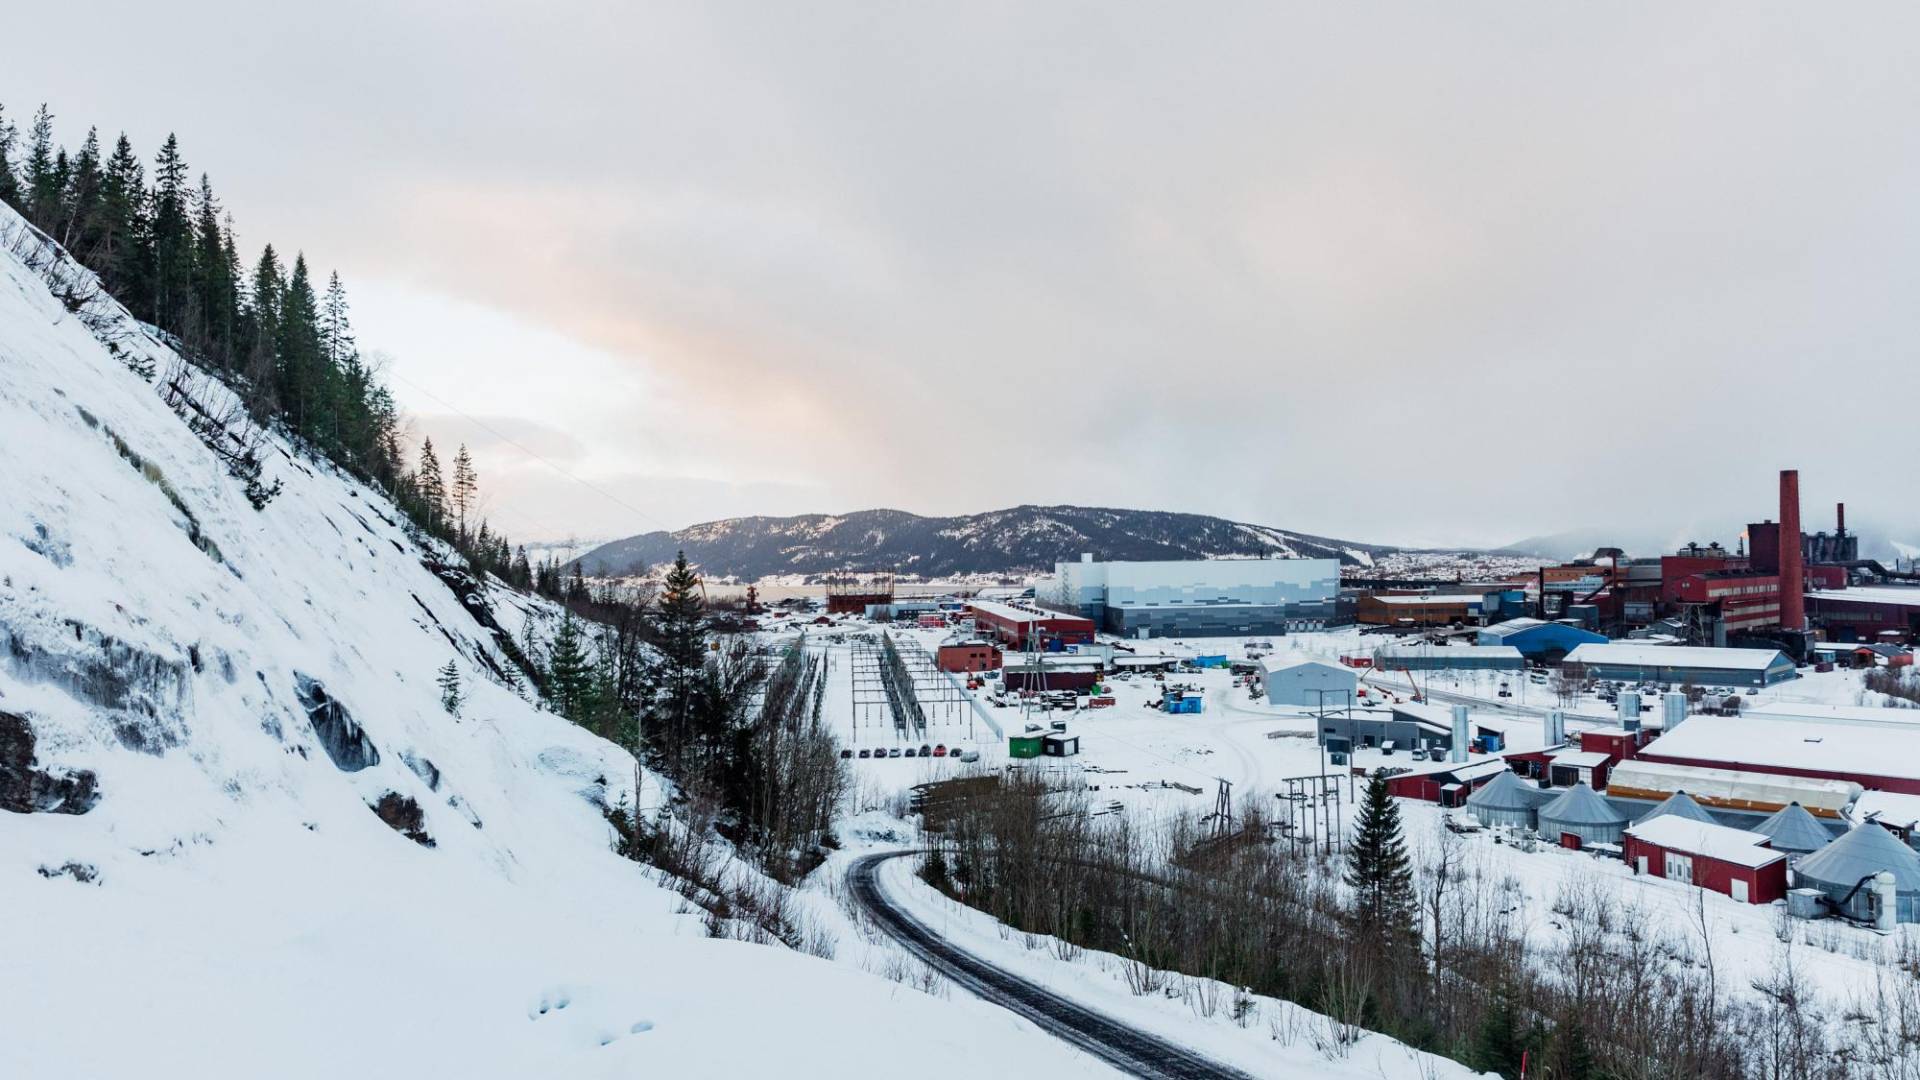 $!Freyr, startup de baterías eléctricas, detuvo construcción de una fábrica cerca de Mo i Rana, Noruega, por políticas de EU.